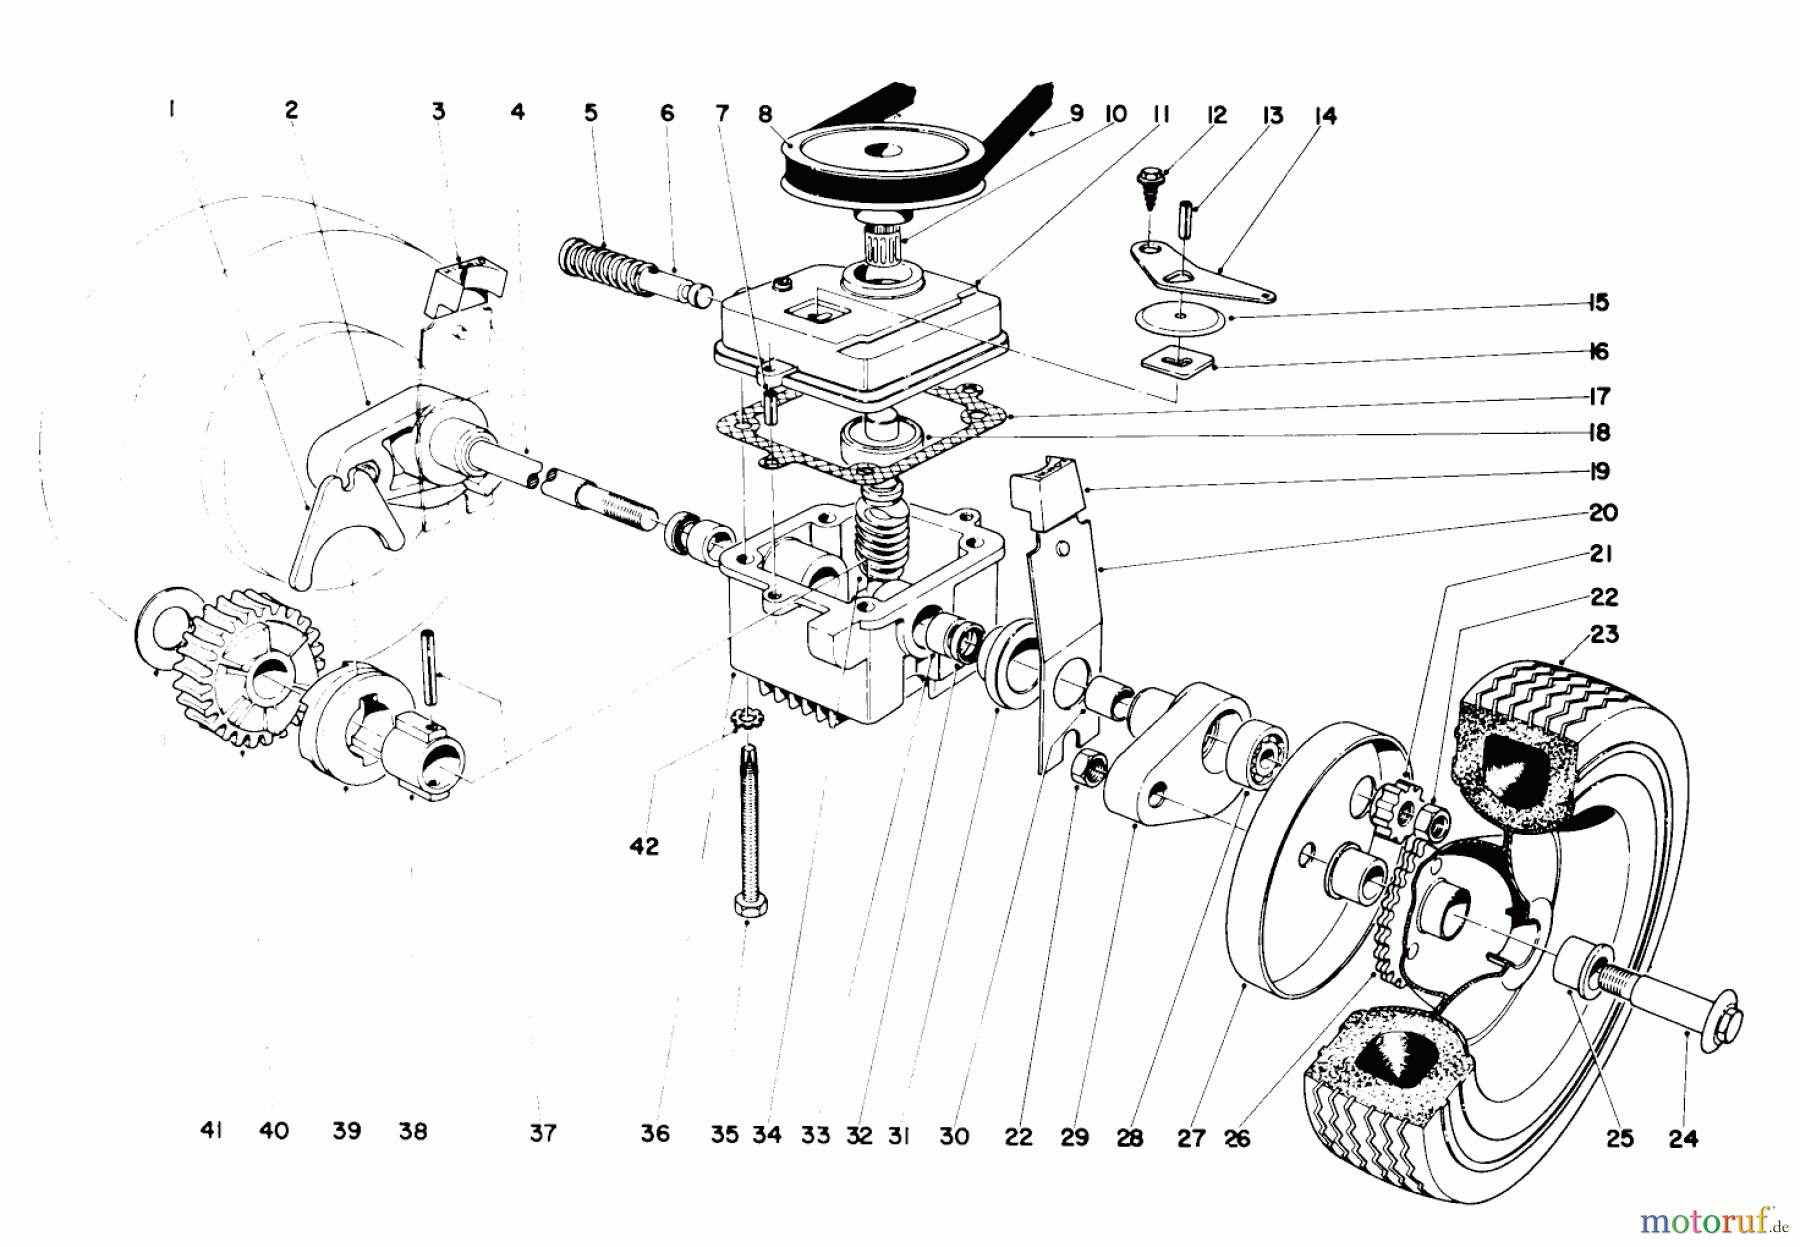  Toro Neu Mowers, Walk-Behind Seite 1 20600 - Toro Lawnmower, 1971 (1000001-1999999) 21